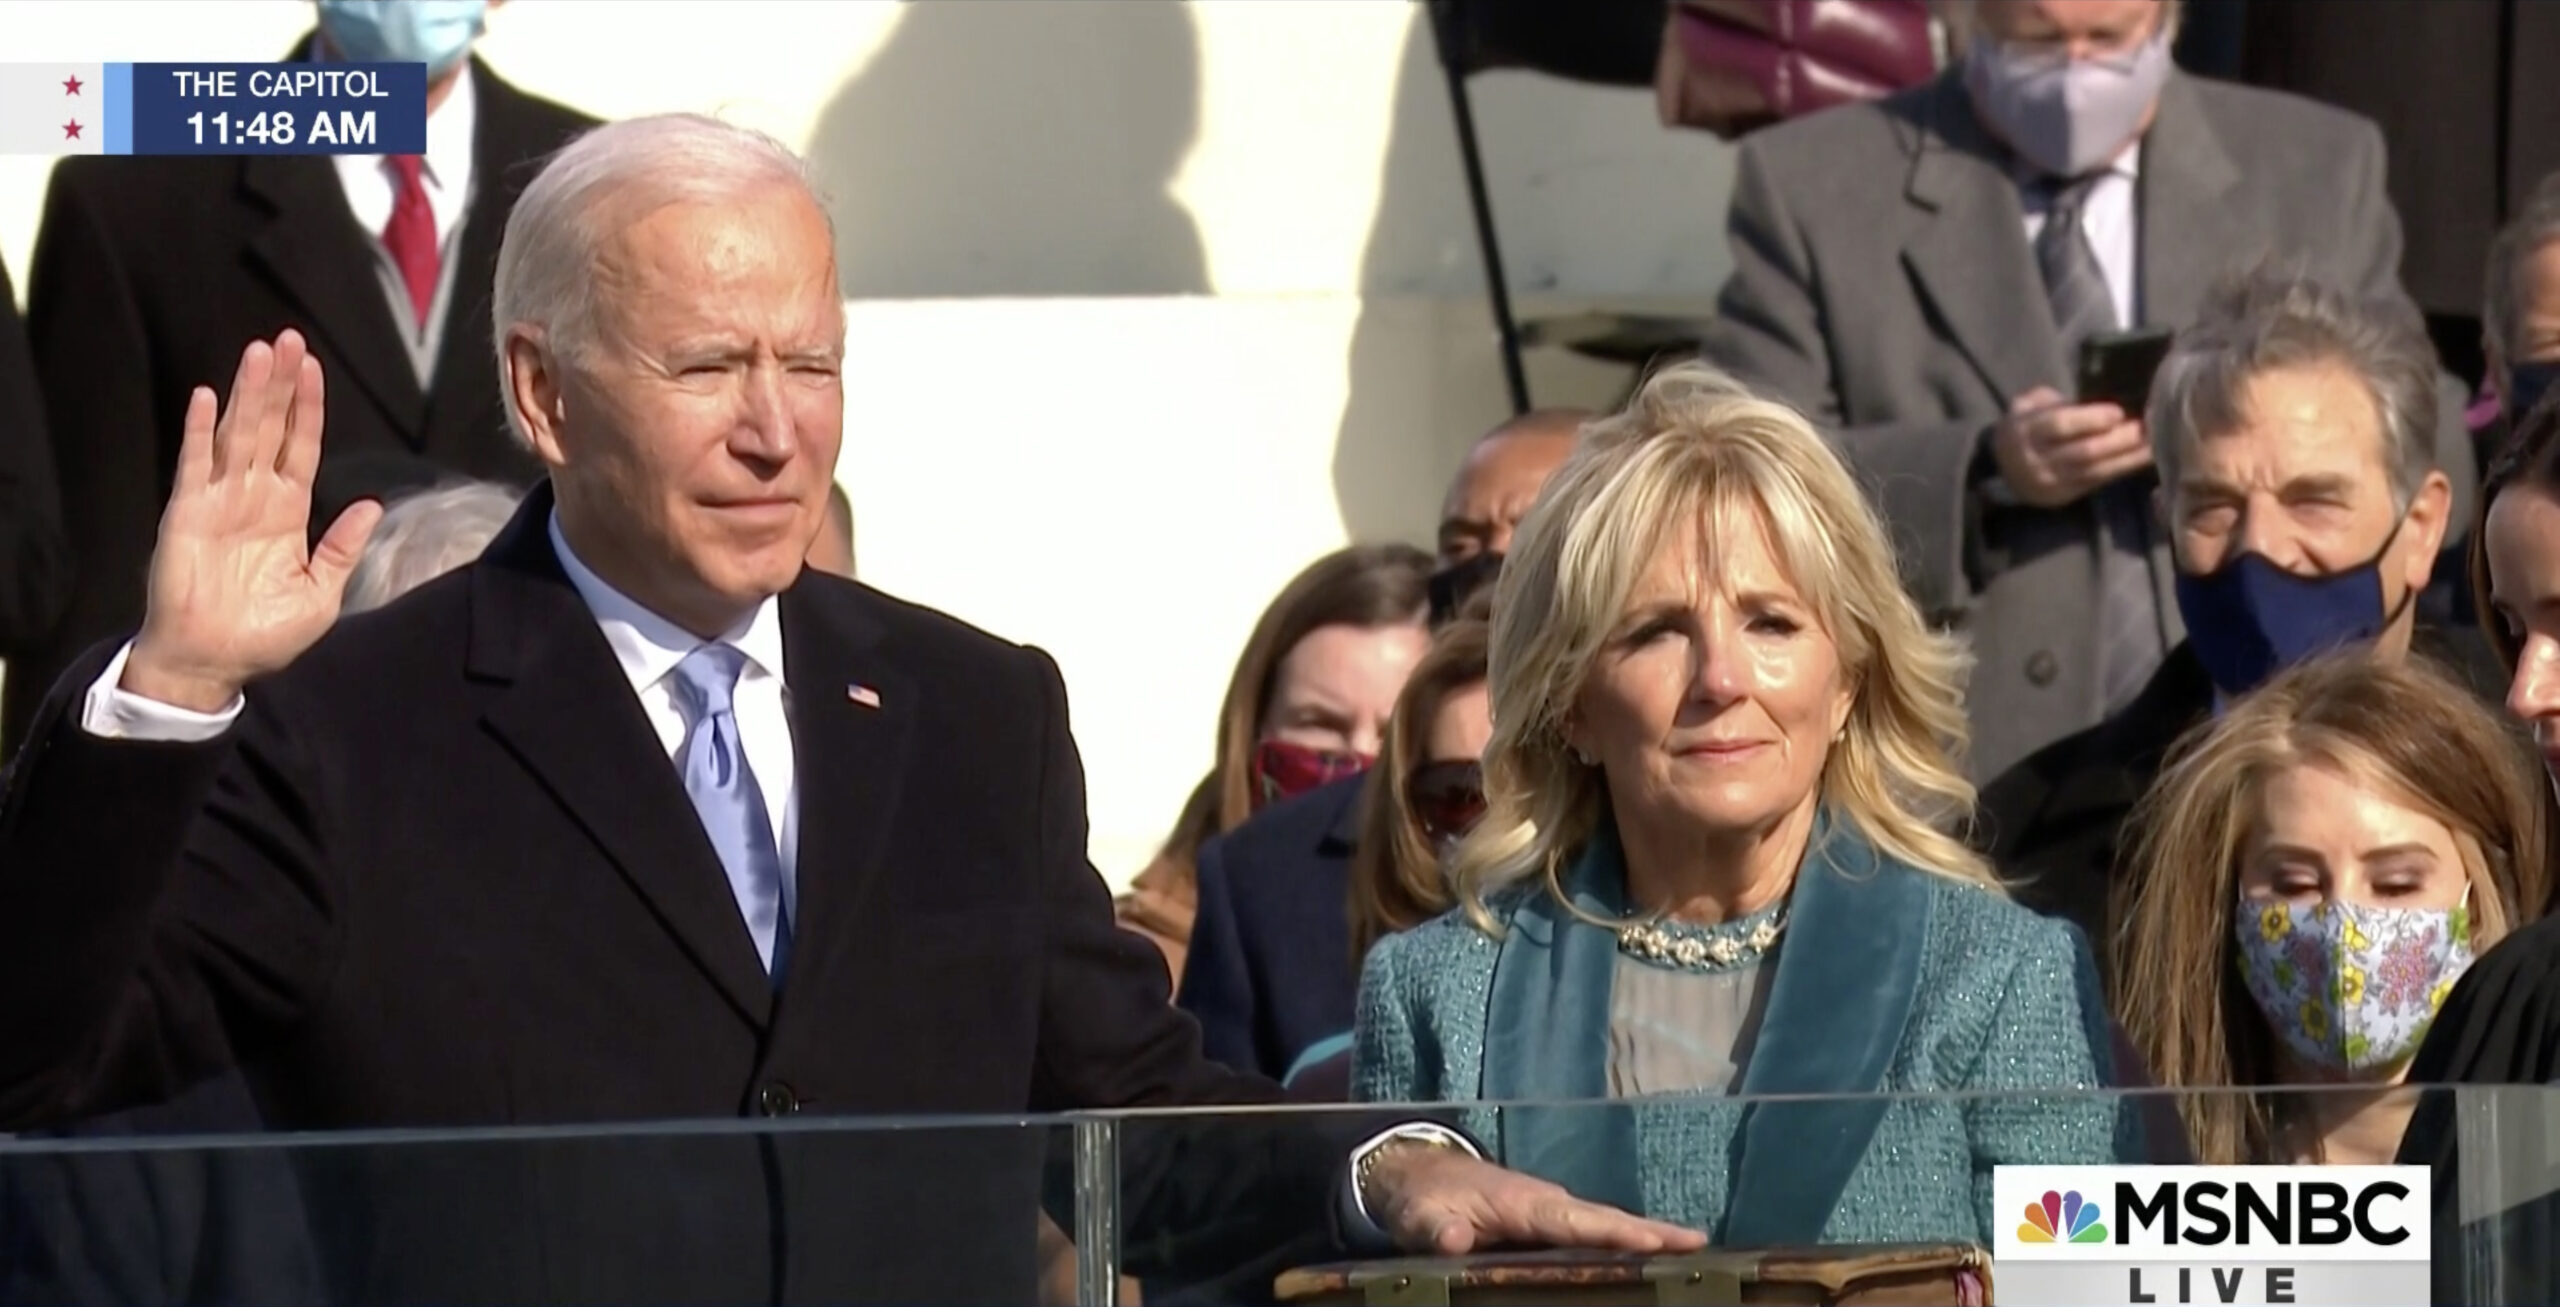 Joe Biden takes the Oath of Office